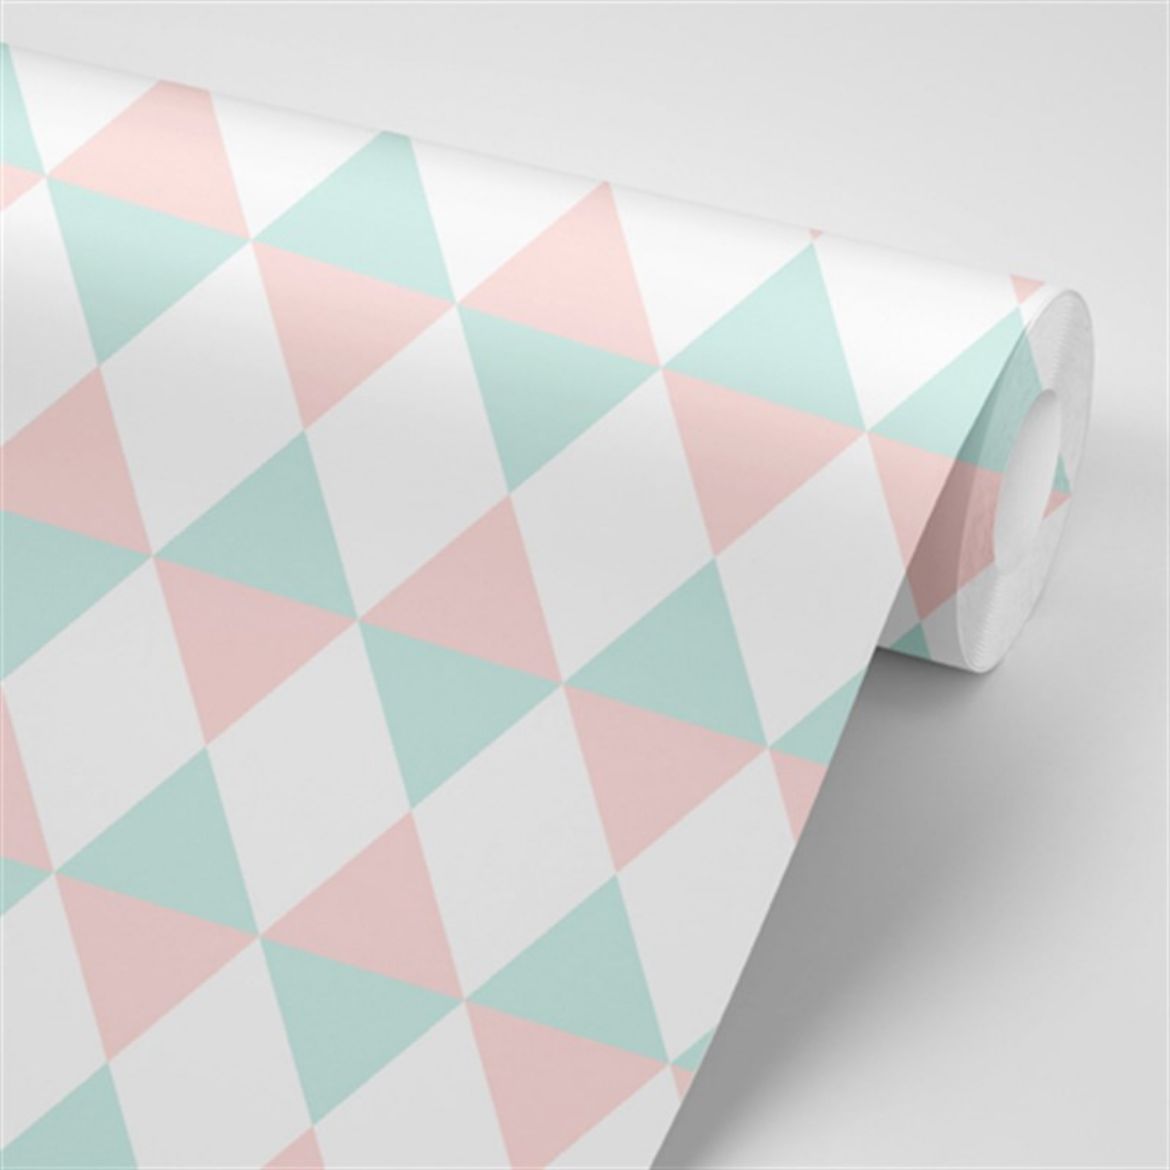 Tasarım Geometrik Desenli Duvar Kağıdı TSD-29 resmi